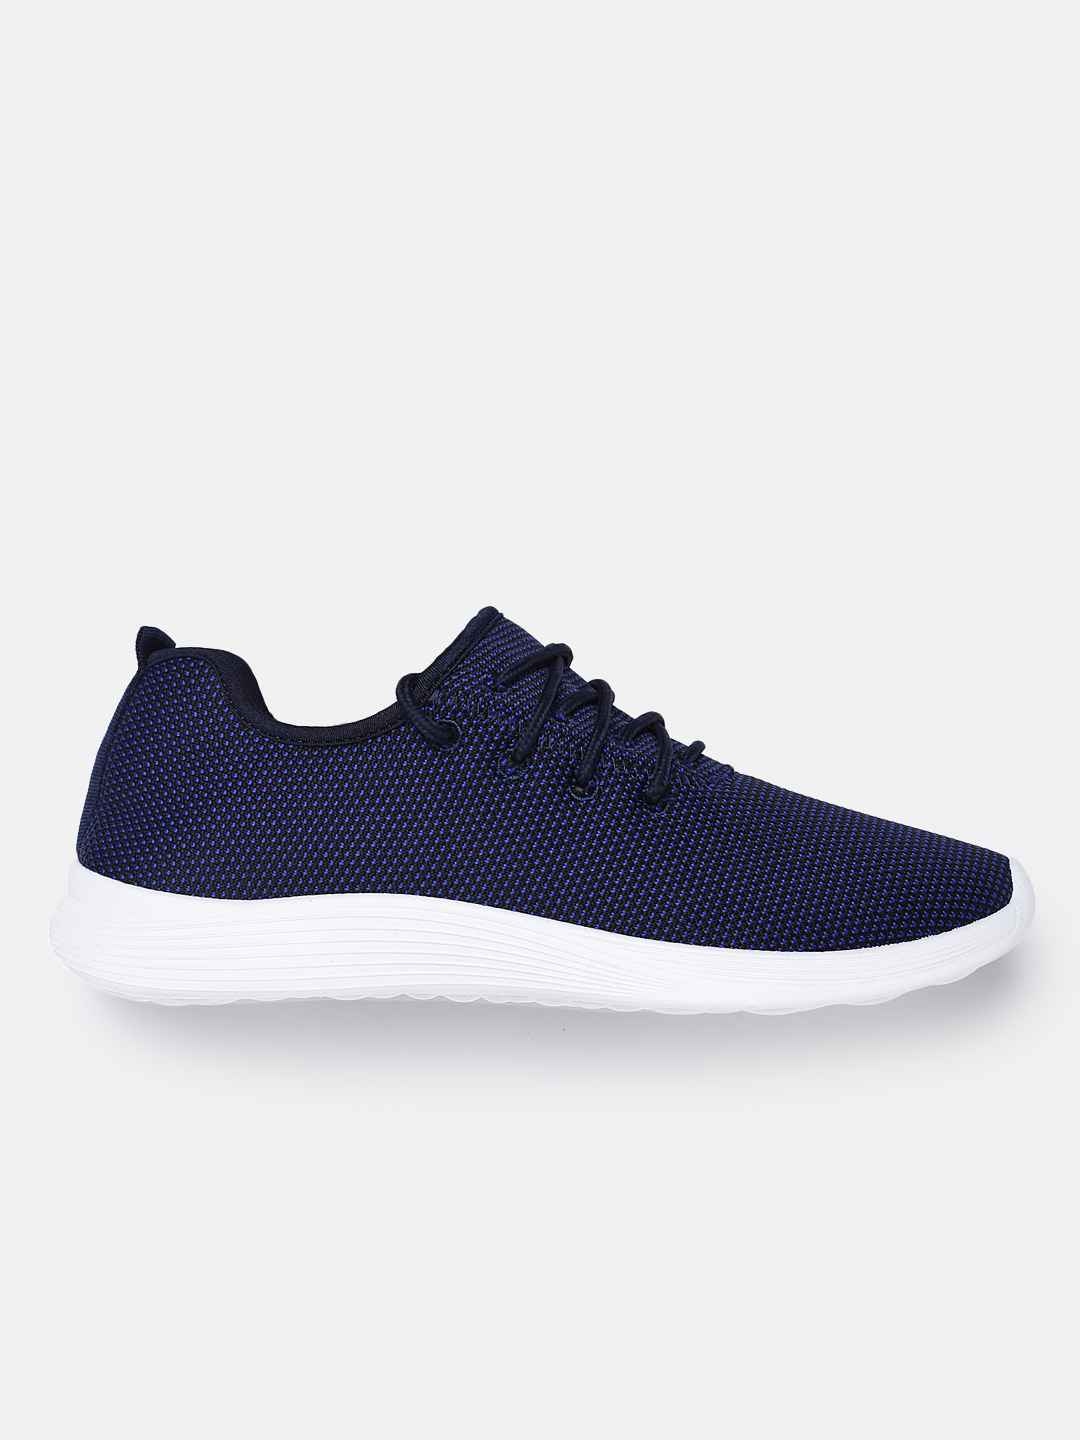 Crew-STREET-Men-Navy-Blue-Sneakers